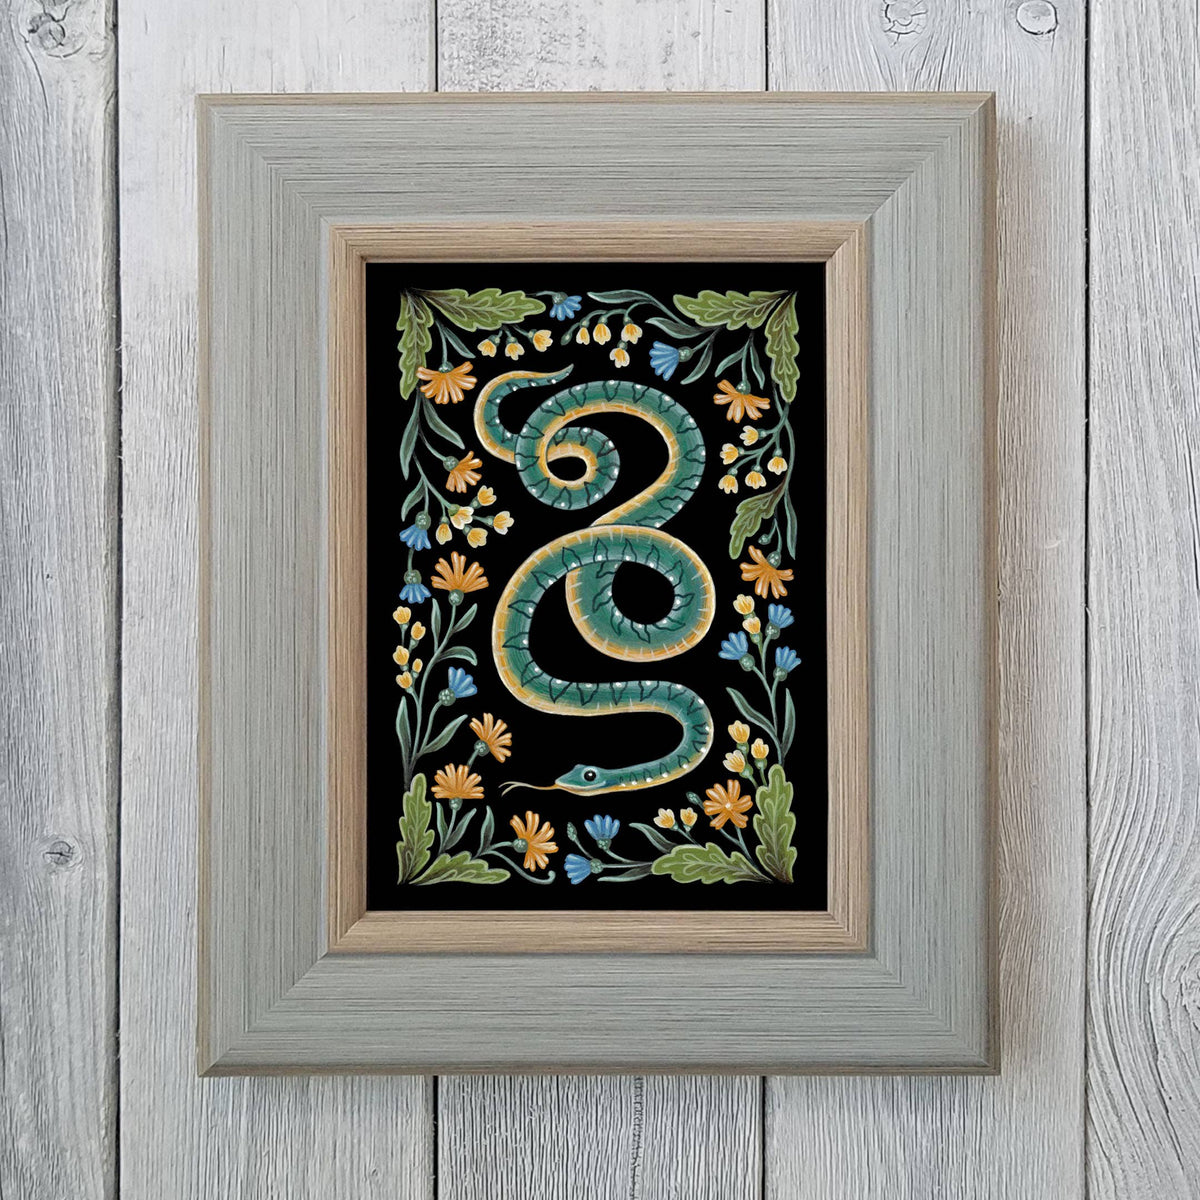 Faina Lorah Snake Art Print Folk Decor: 5x7